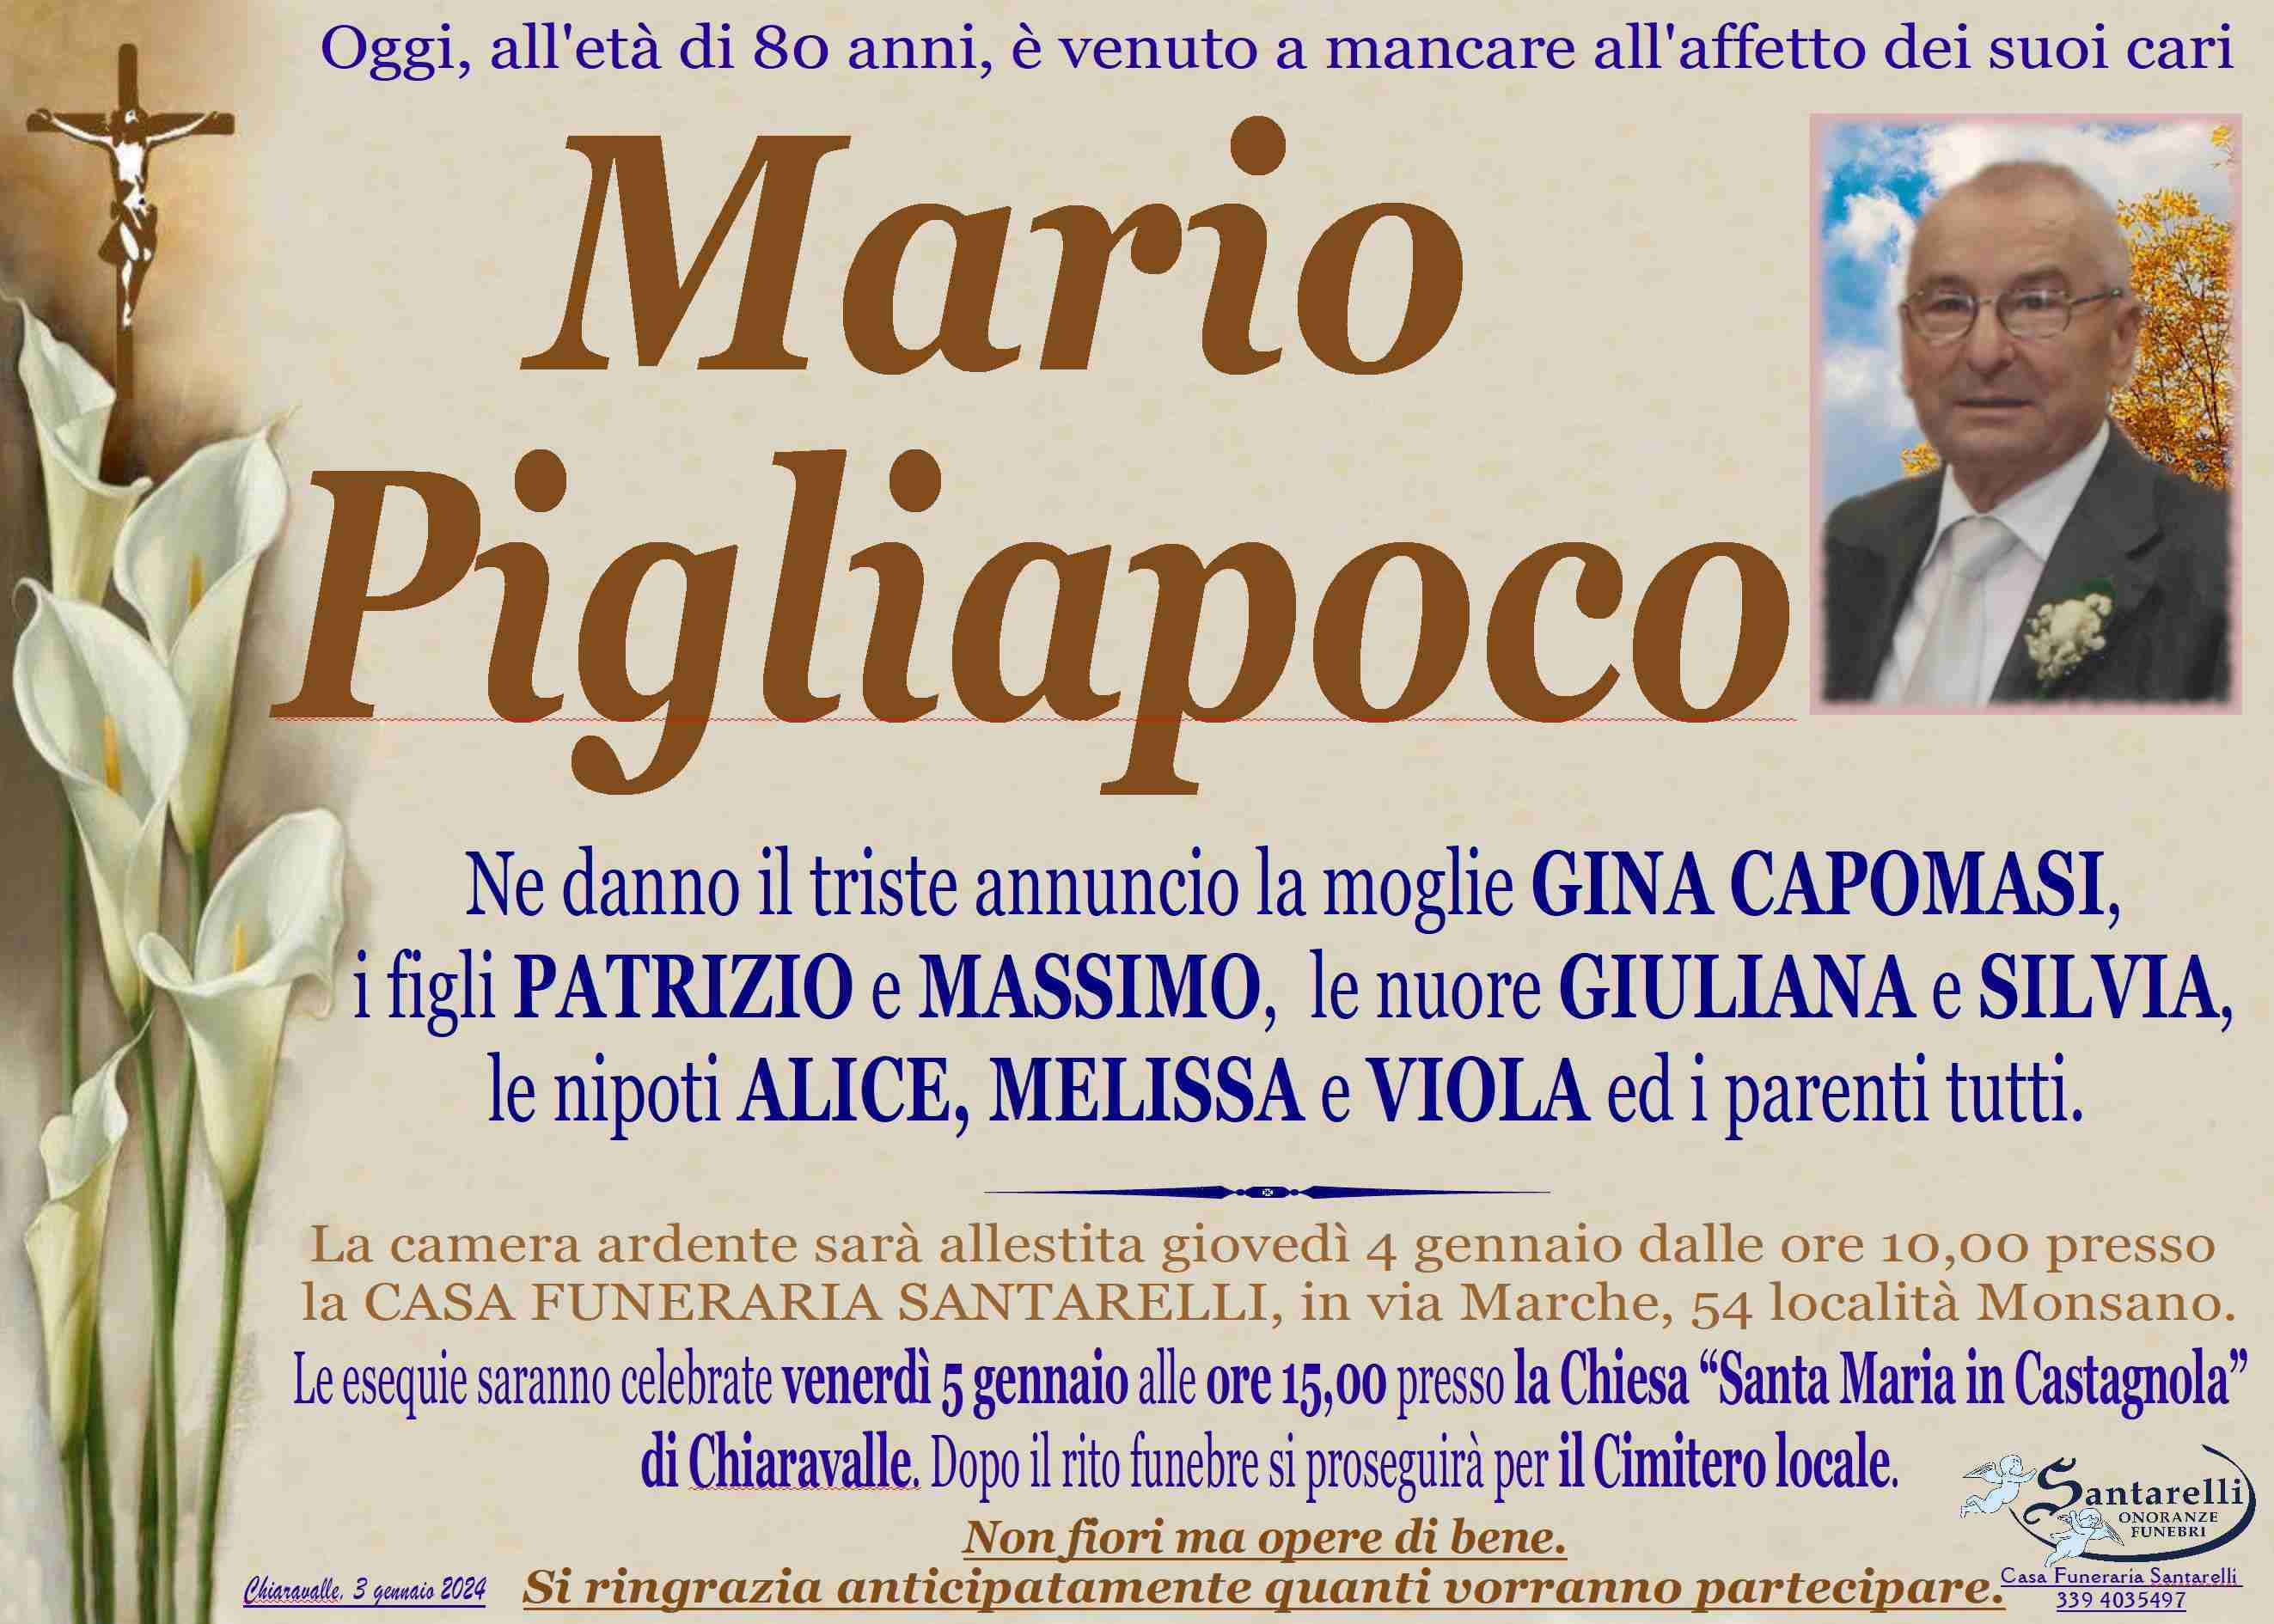 Mario Pigliapoco